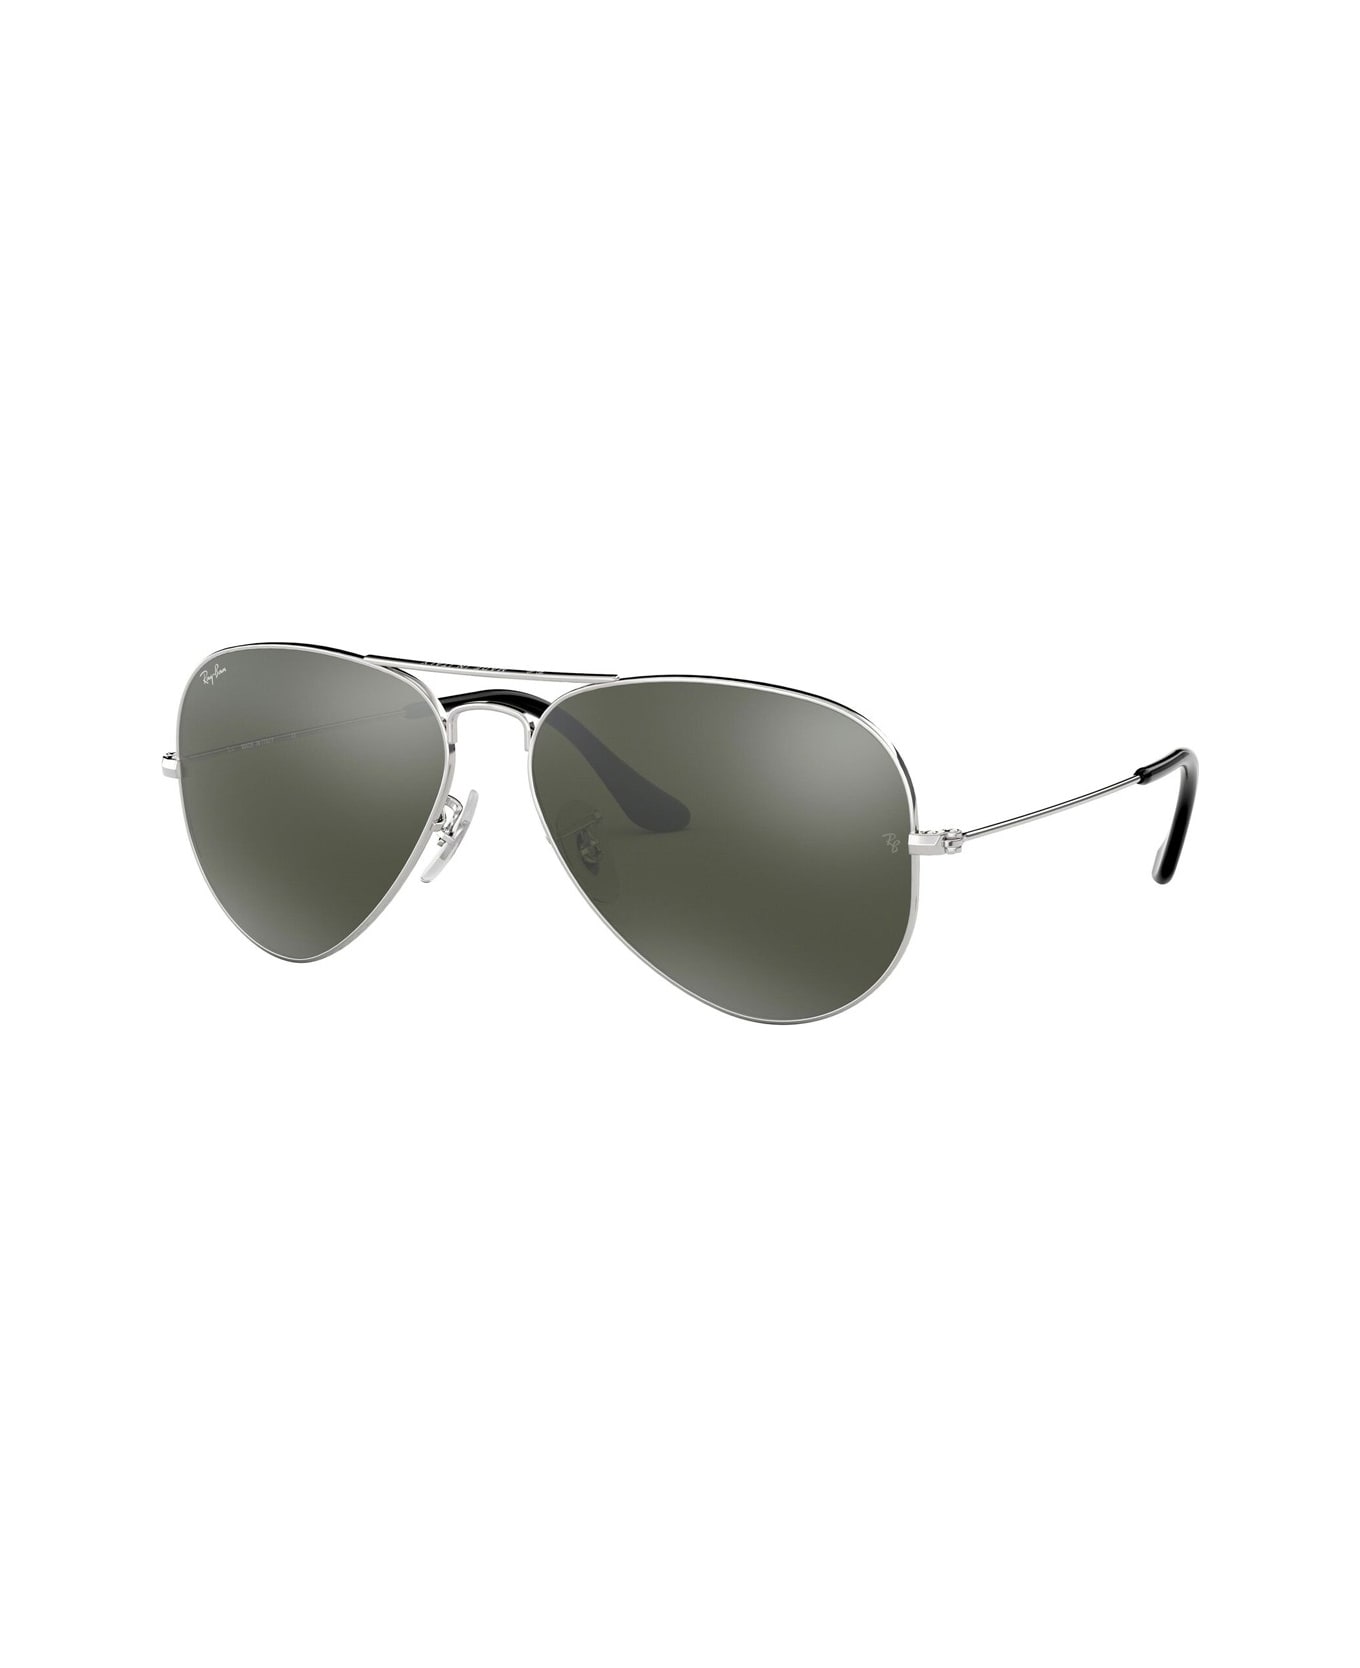 Ray-Ban Aviator 3025 Sunglasses - Argento